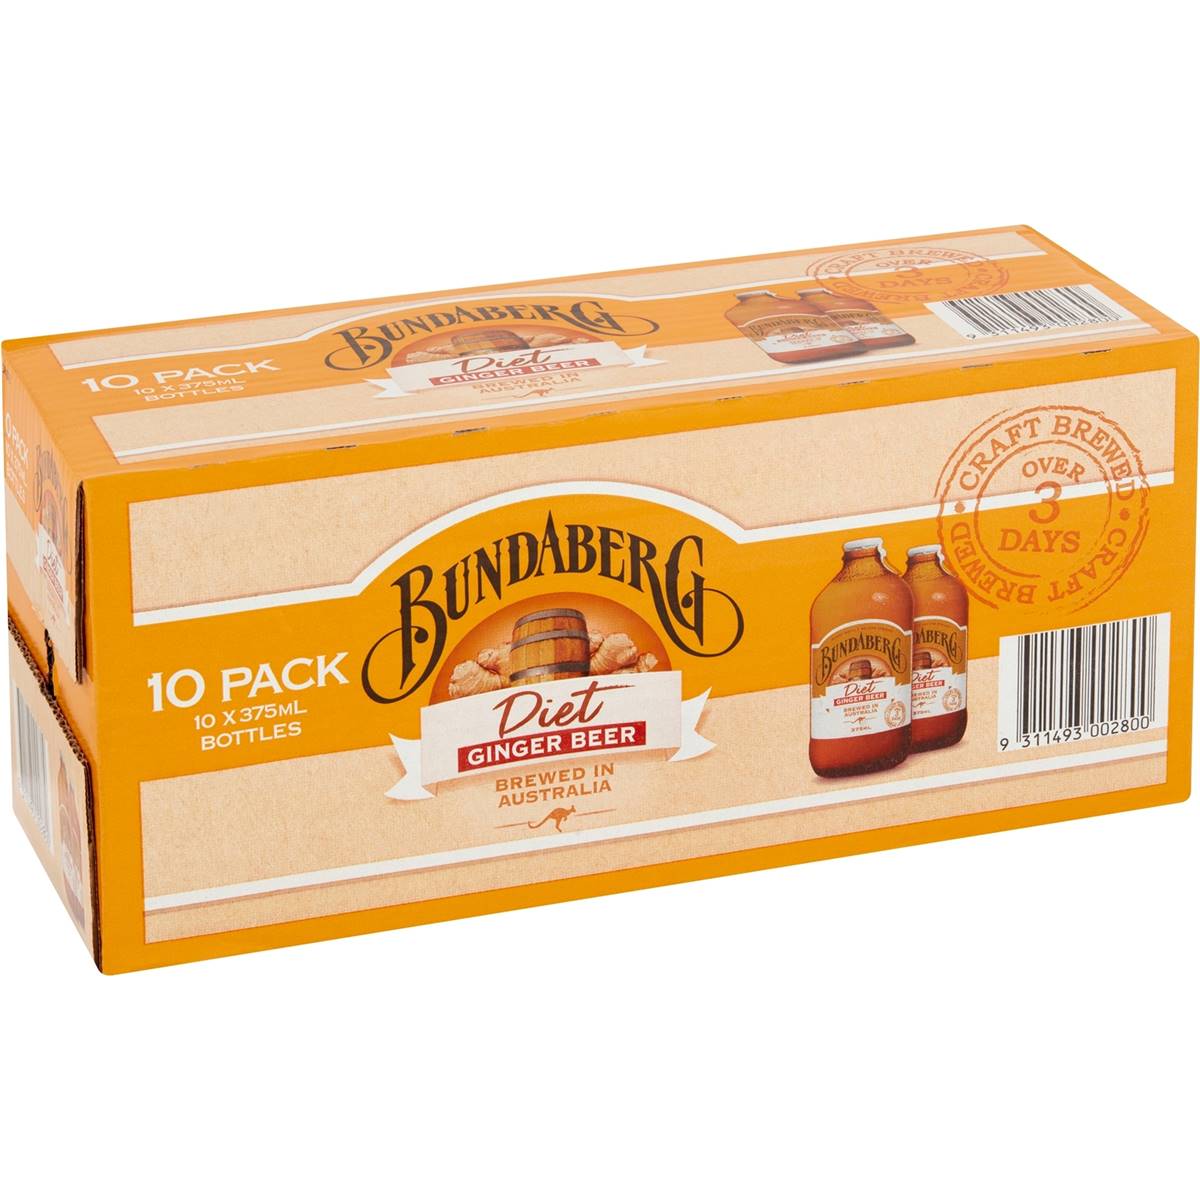 Bundaberg Diet Ginger Beer Bottles 10x375ml